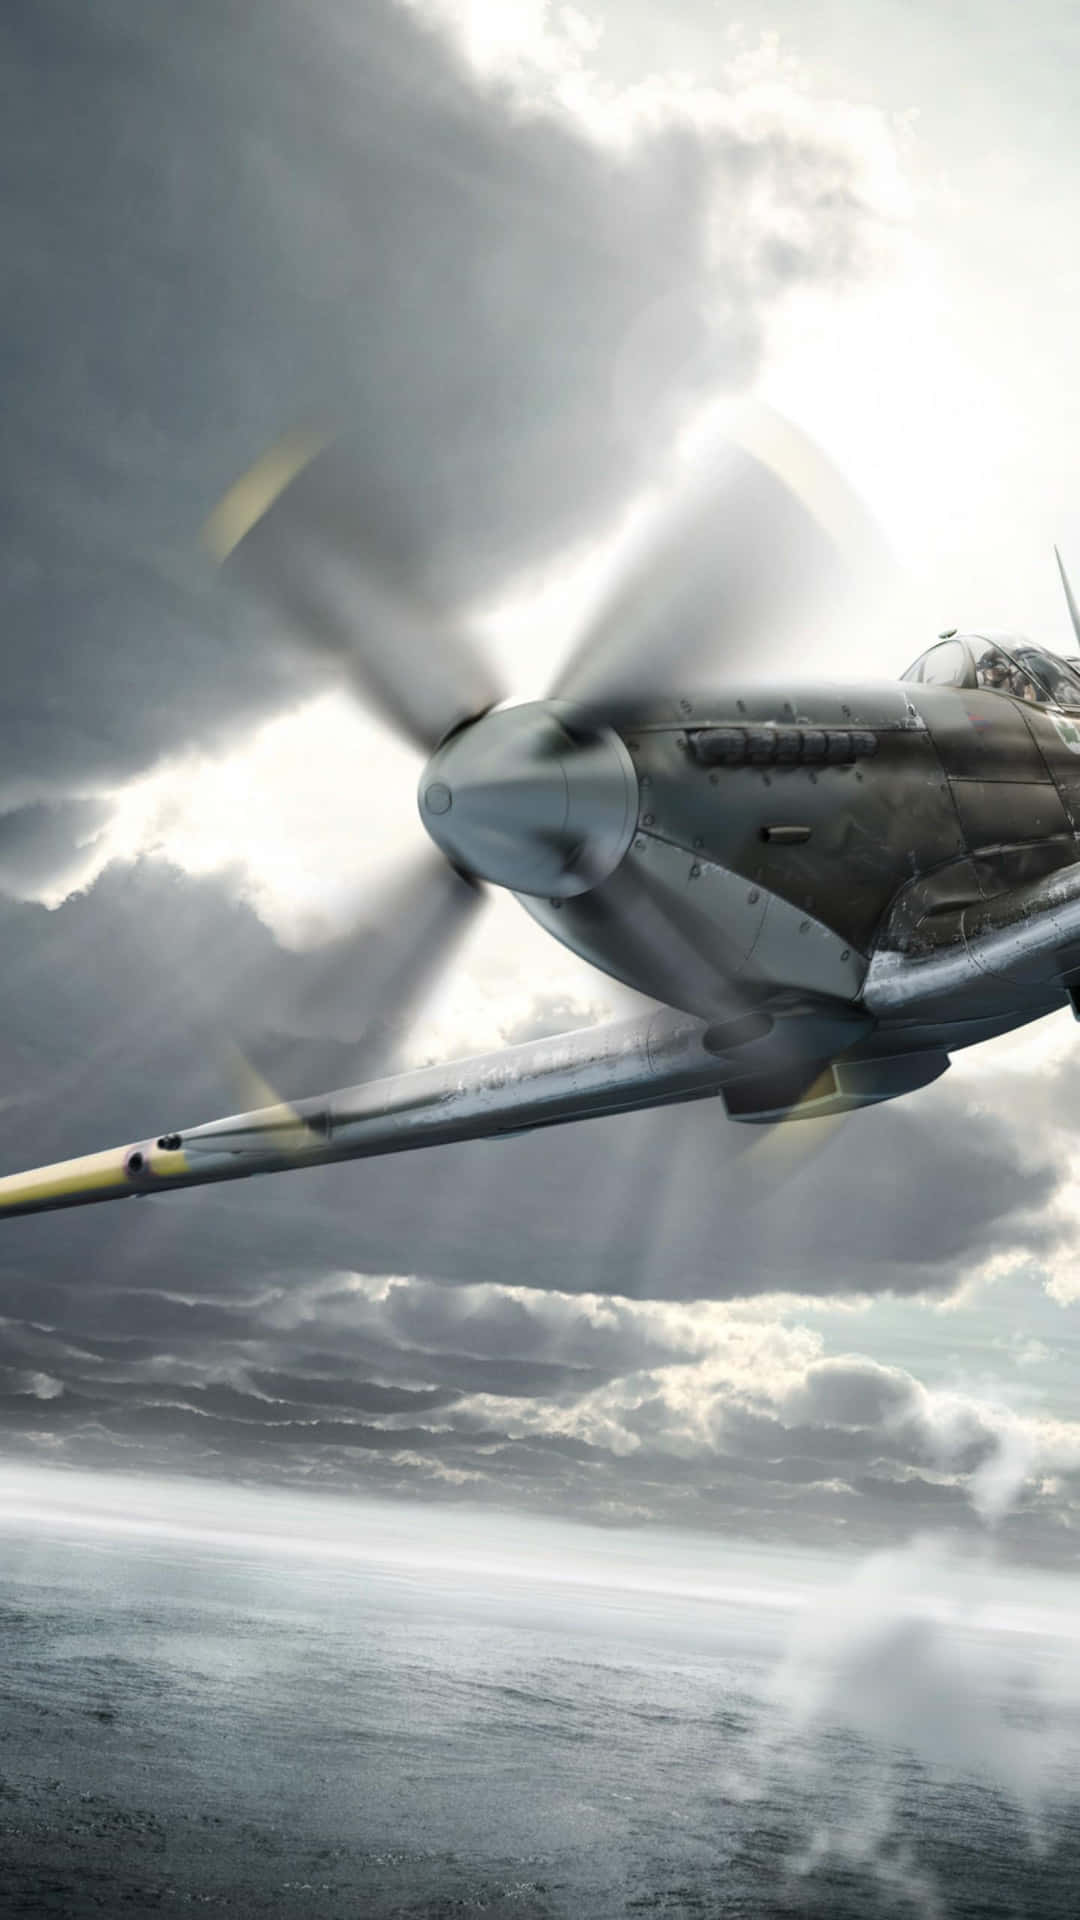 Einspitfire-flugzeug, Ein Ikonisches Symbol Der Luftfahrtgeschichte Und Der Schlacht Um Britannien. Wallpaper